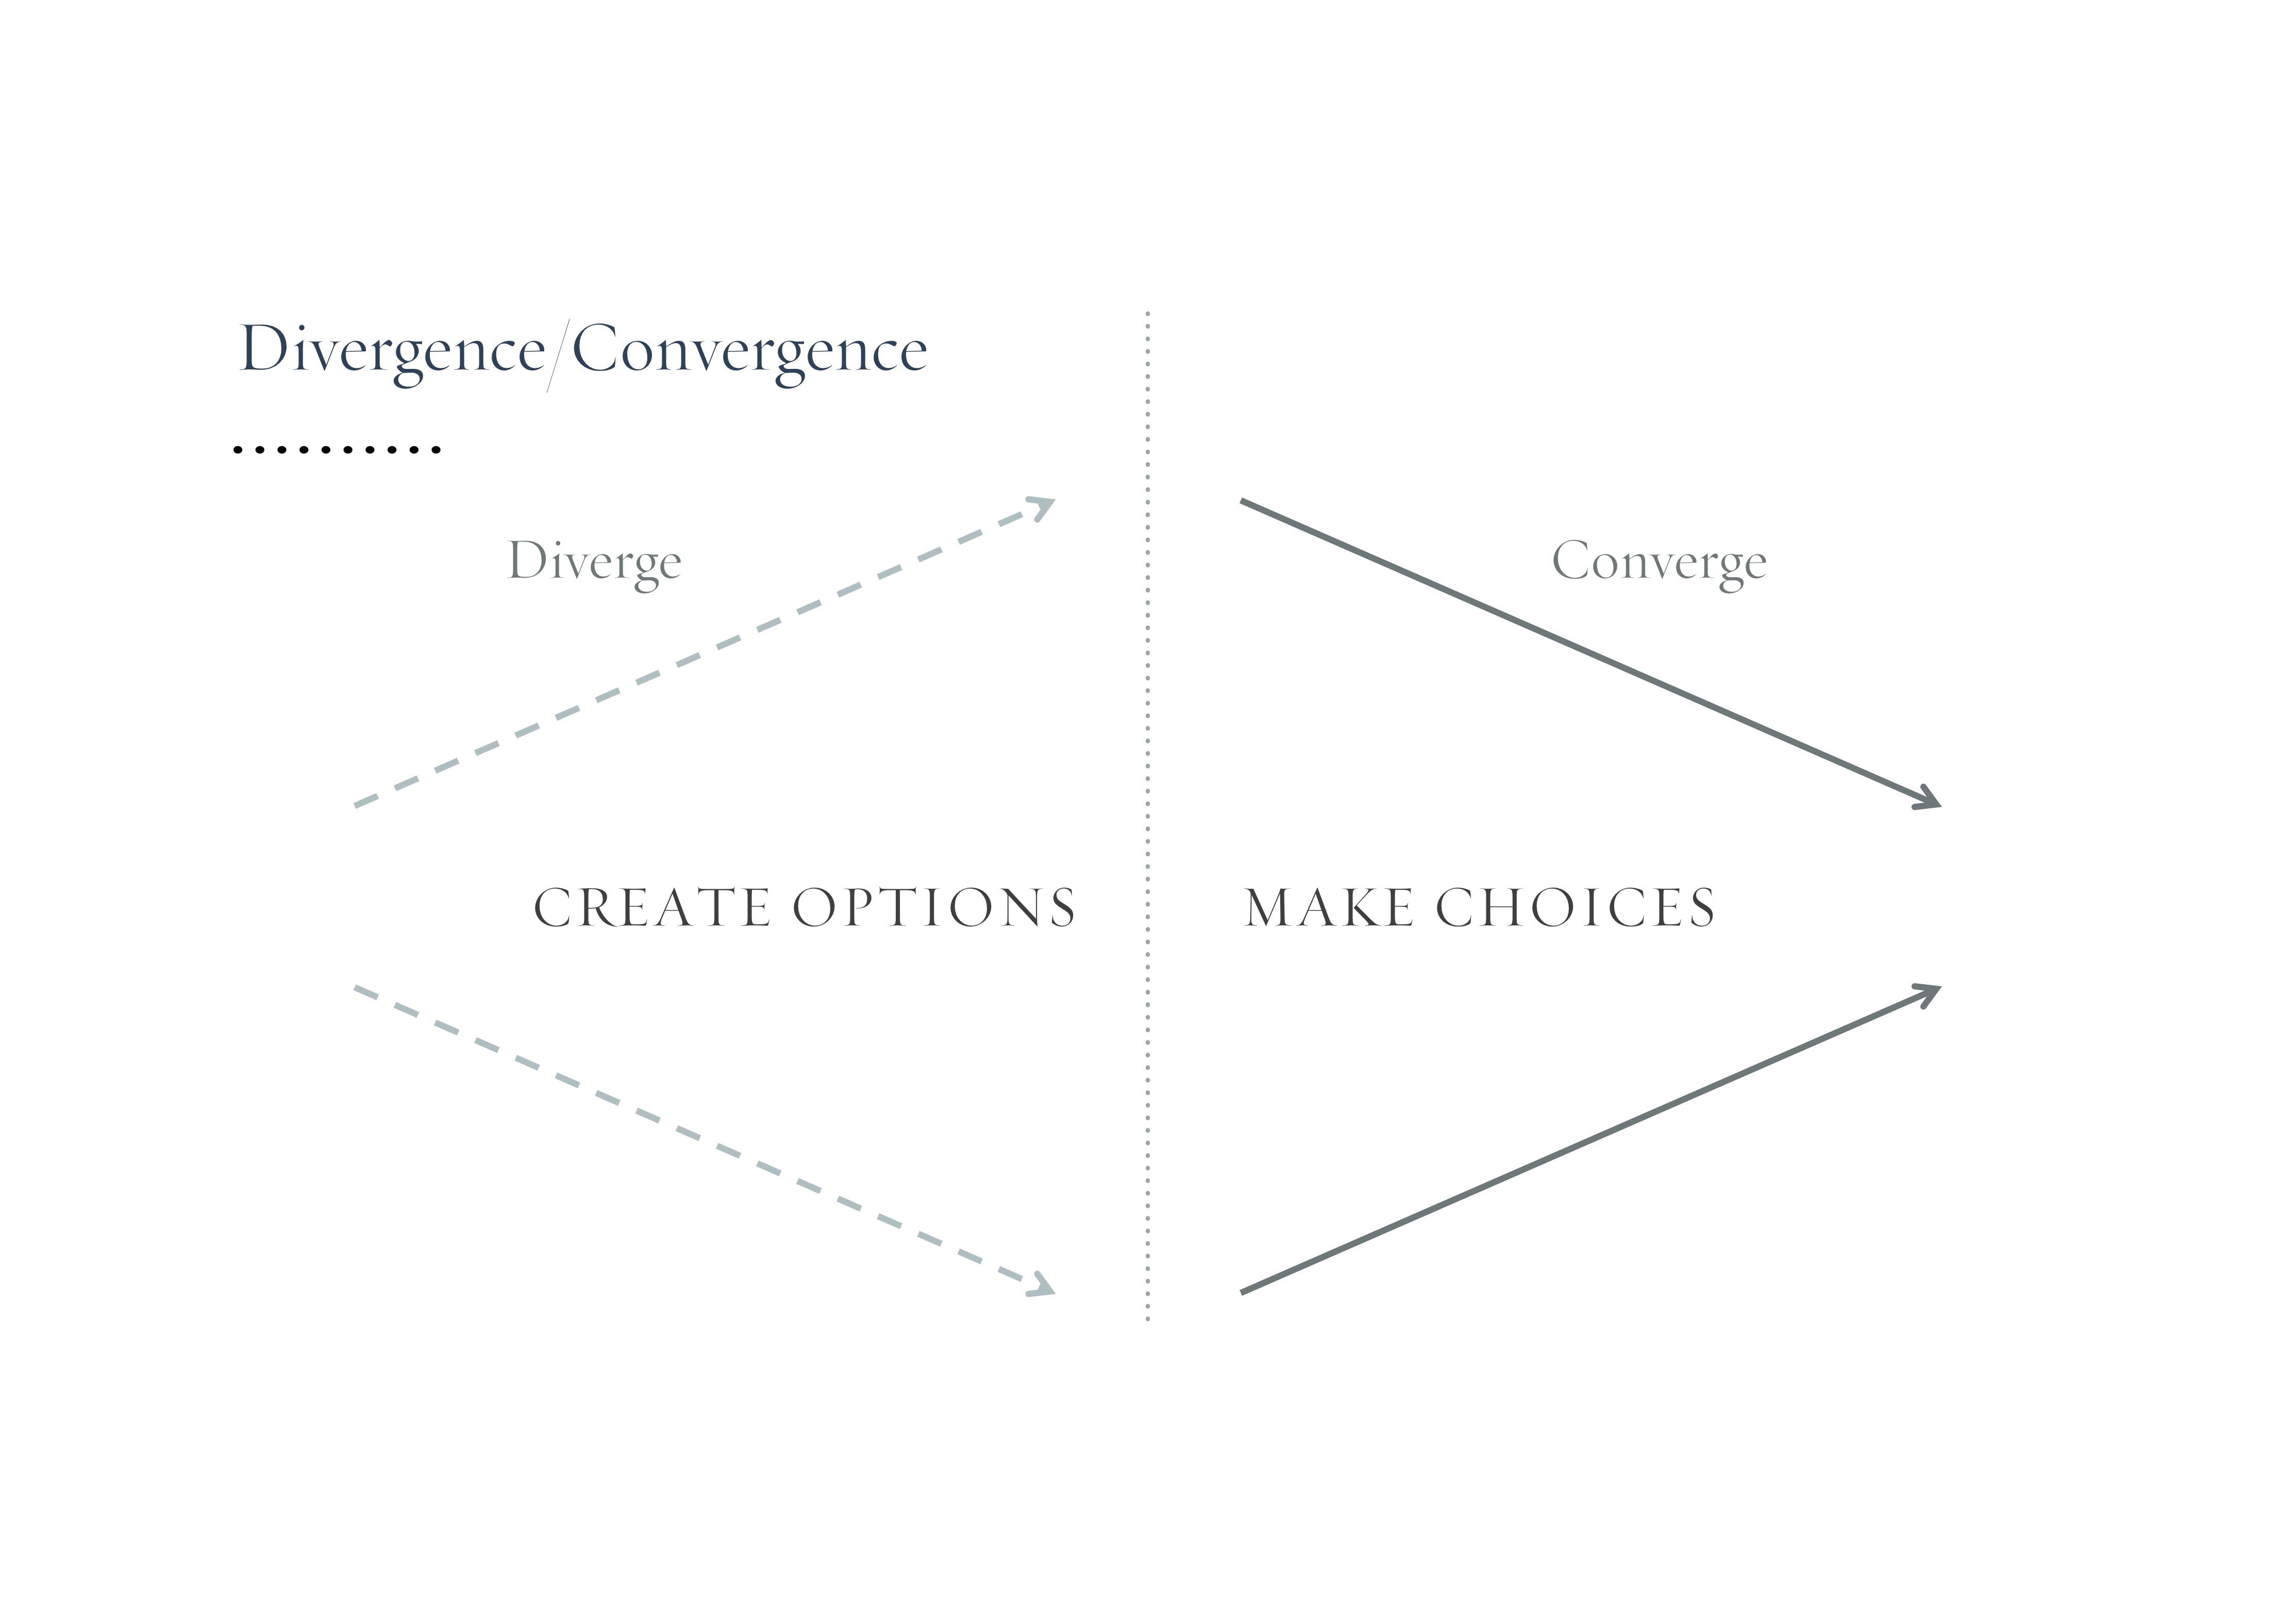 Übersicht Divergence/Convergence Modell